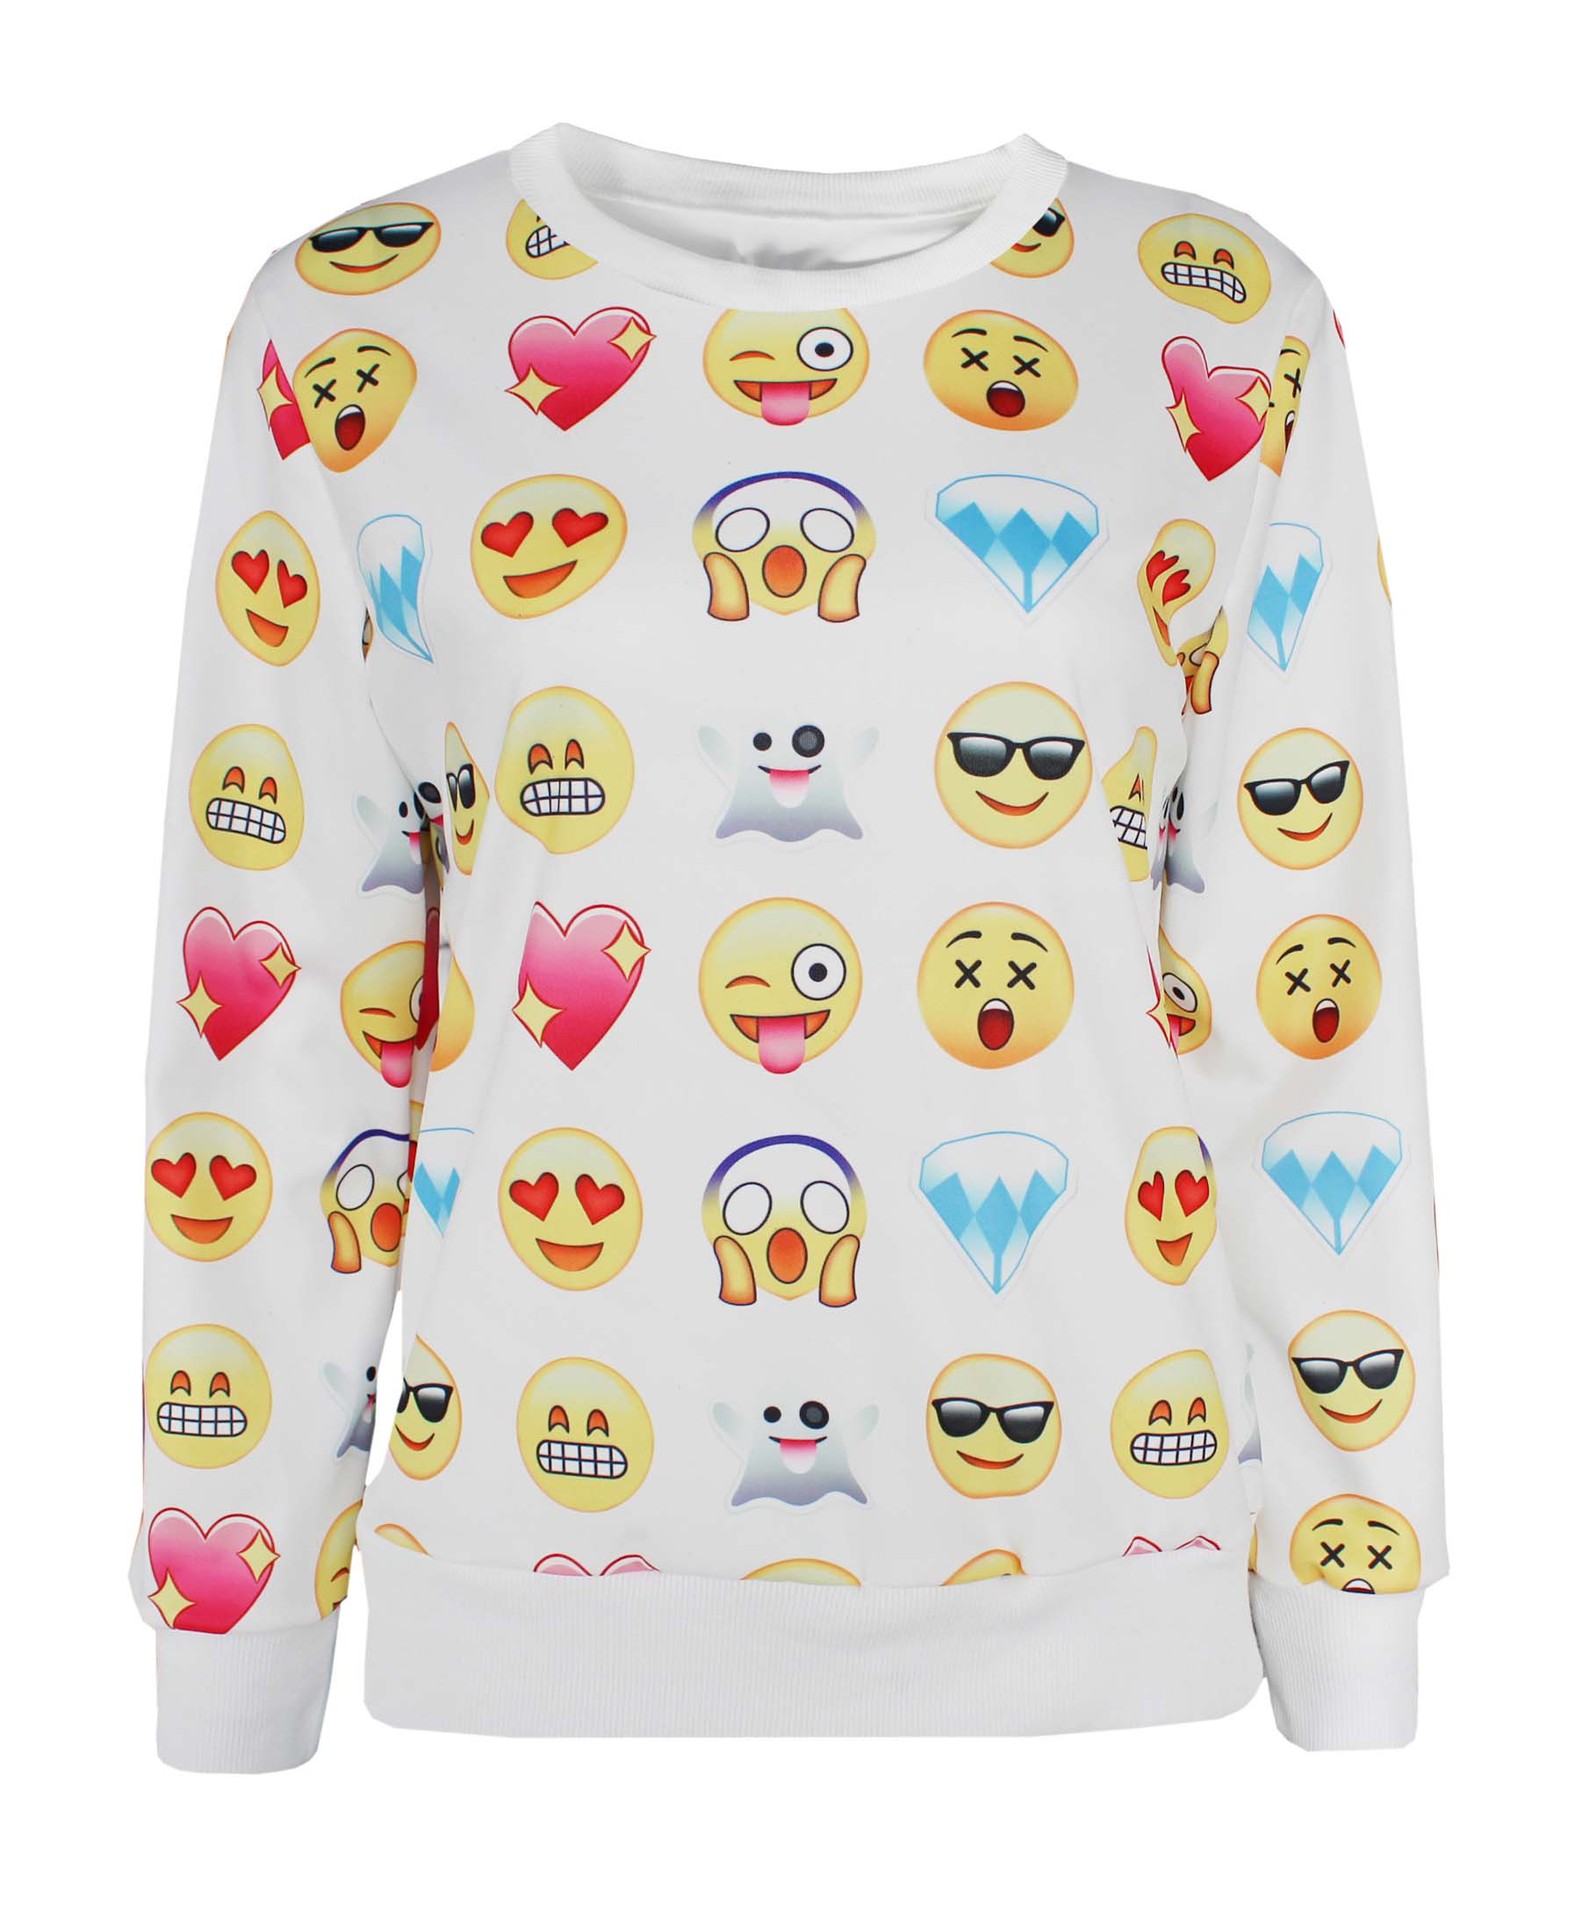 欧美爆款速卖通/ebay热卖 时尚qq表情 emoji 长袖卫衣 3d立体印花